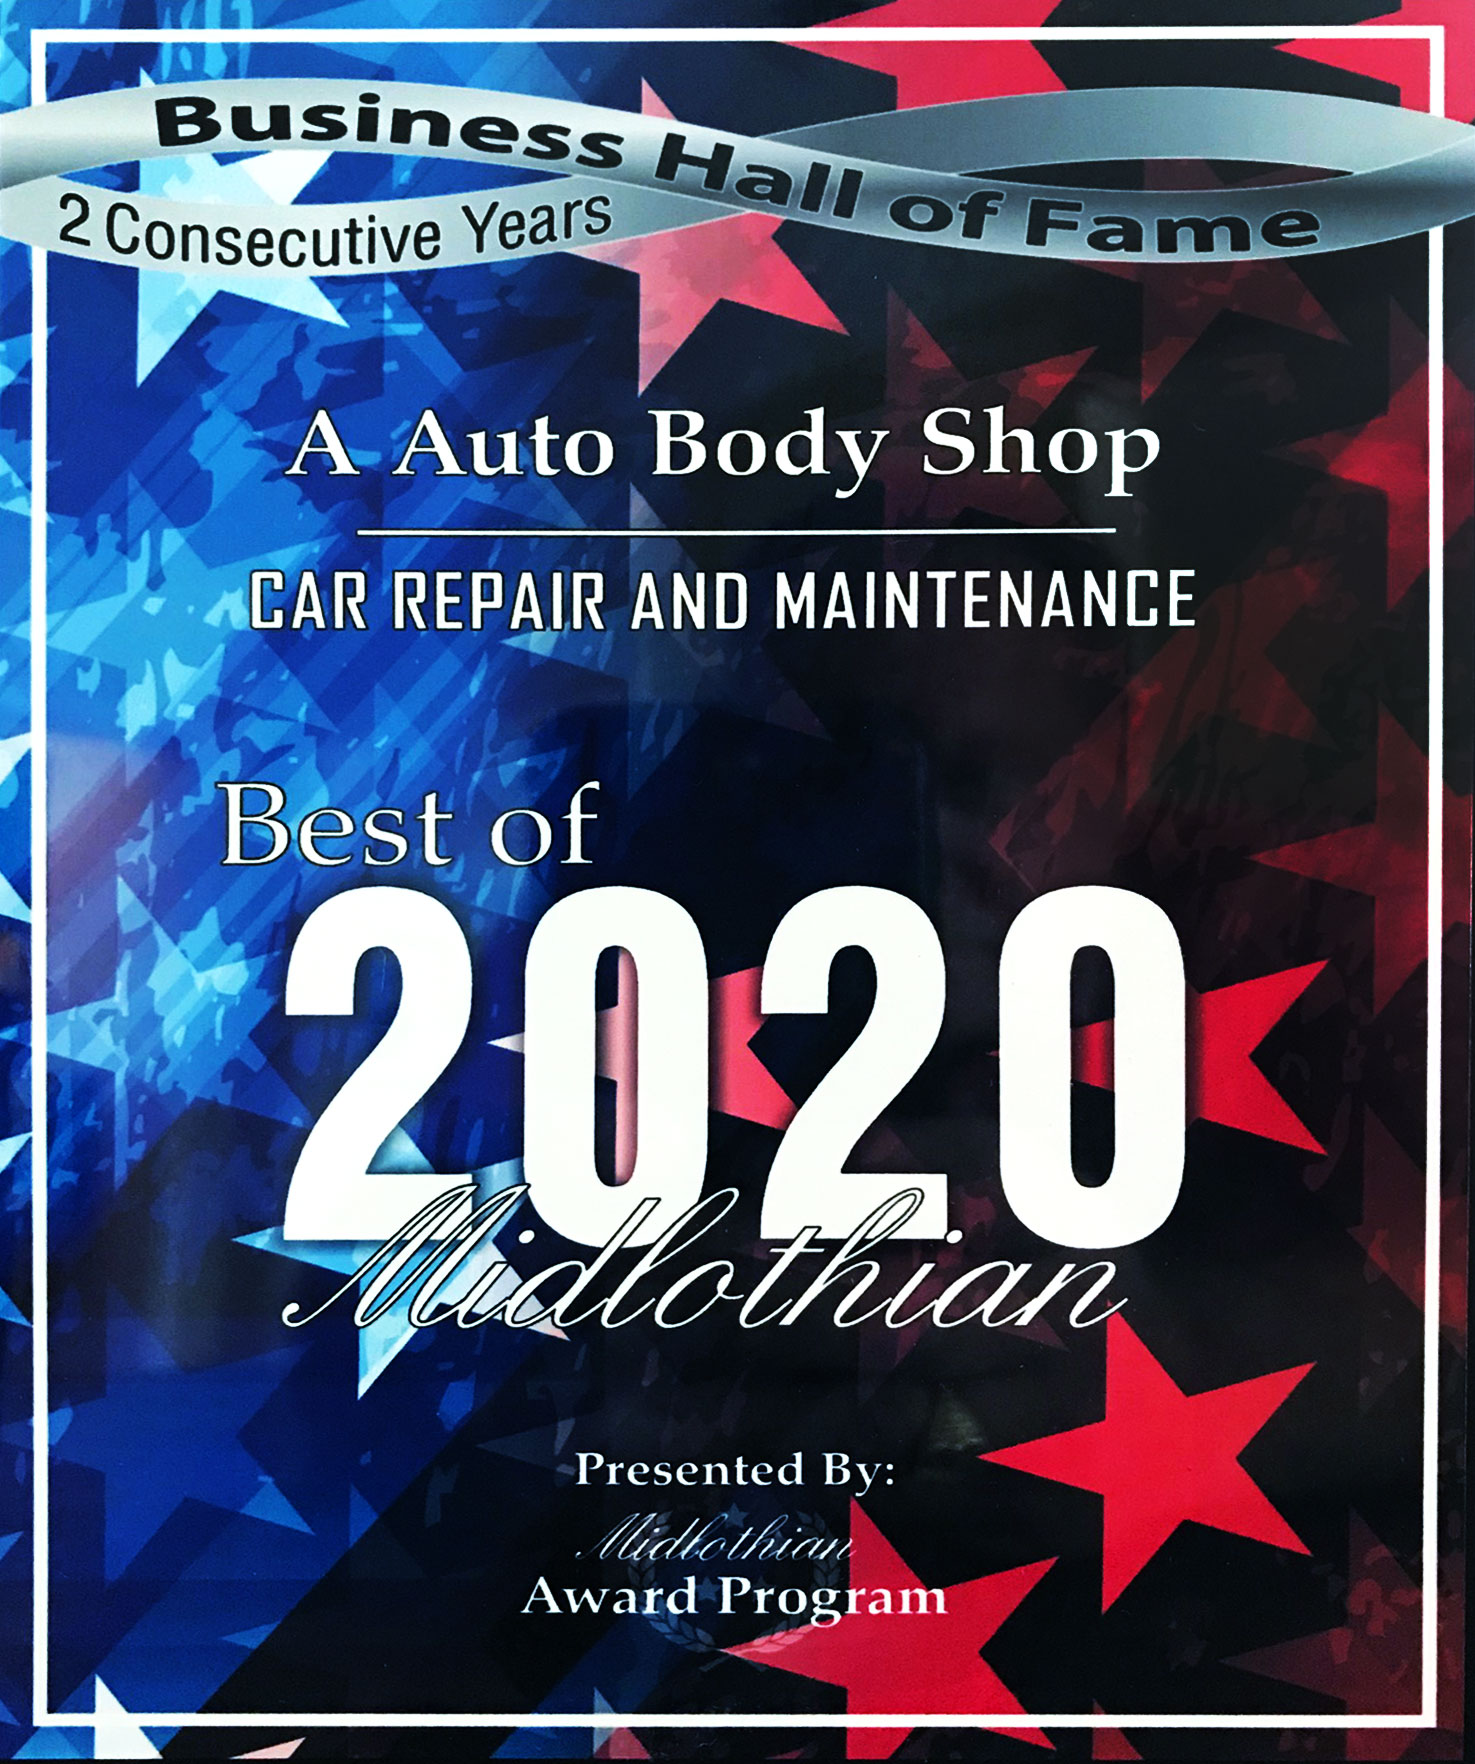 A Auto Body Shop Award